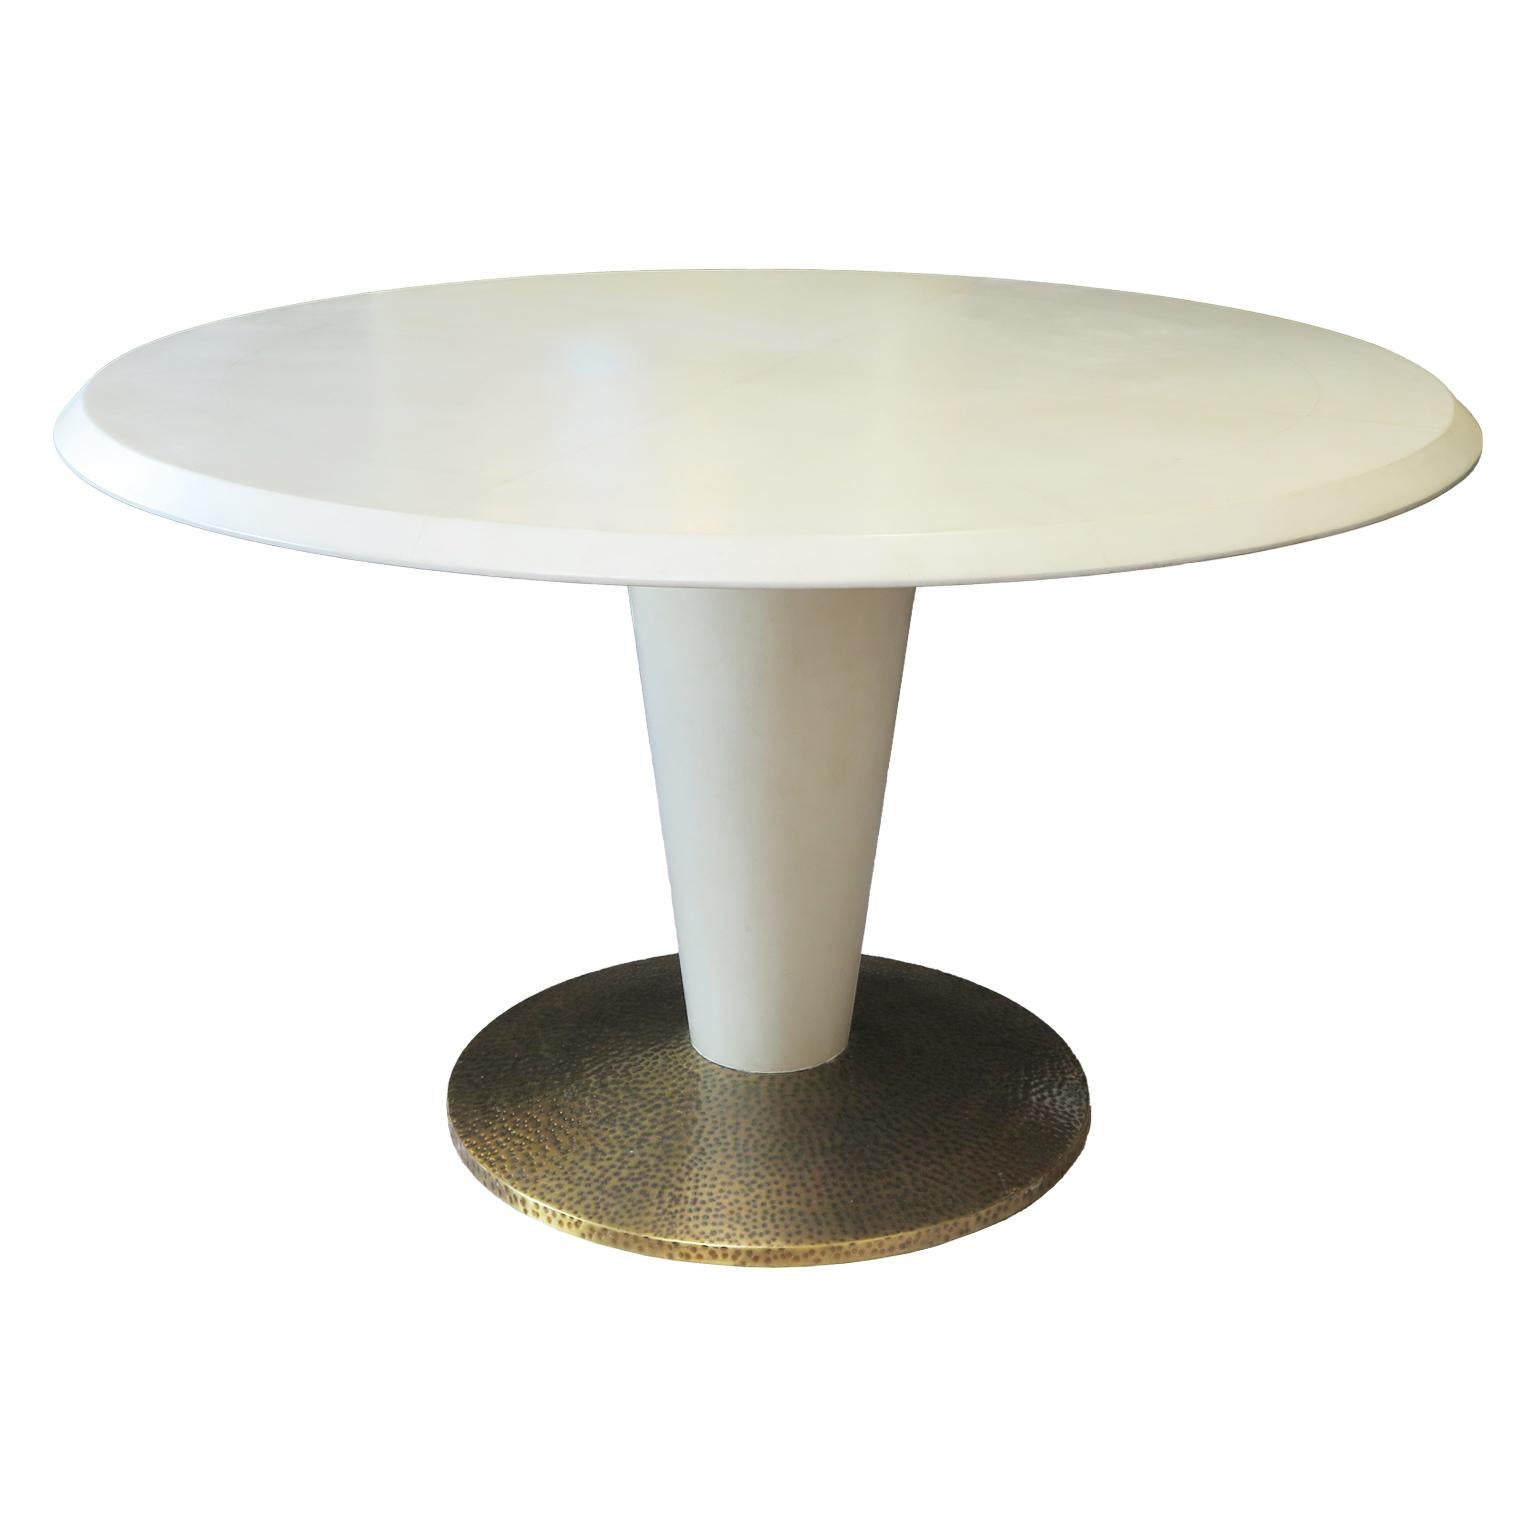 Cette table italienne du milieu du siècle est réalisée en faux parchemin avec une technique de laquage appliquée à la main. Le plateau est divisé en quatre parties dont la teinte ivoire, légèrement vieillie et jaune, évoque le toucher du parchemin.